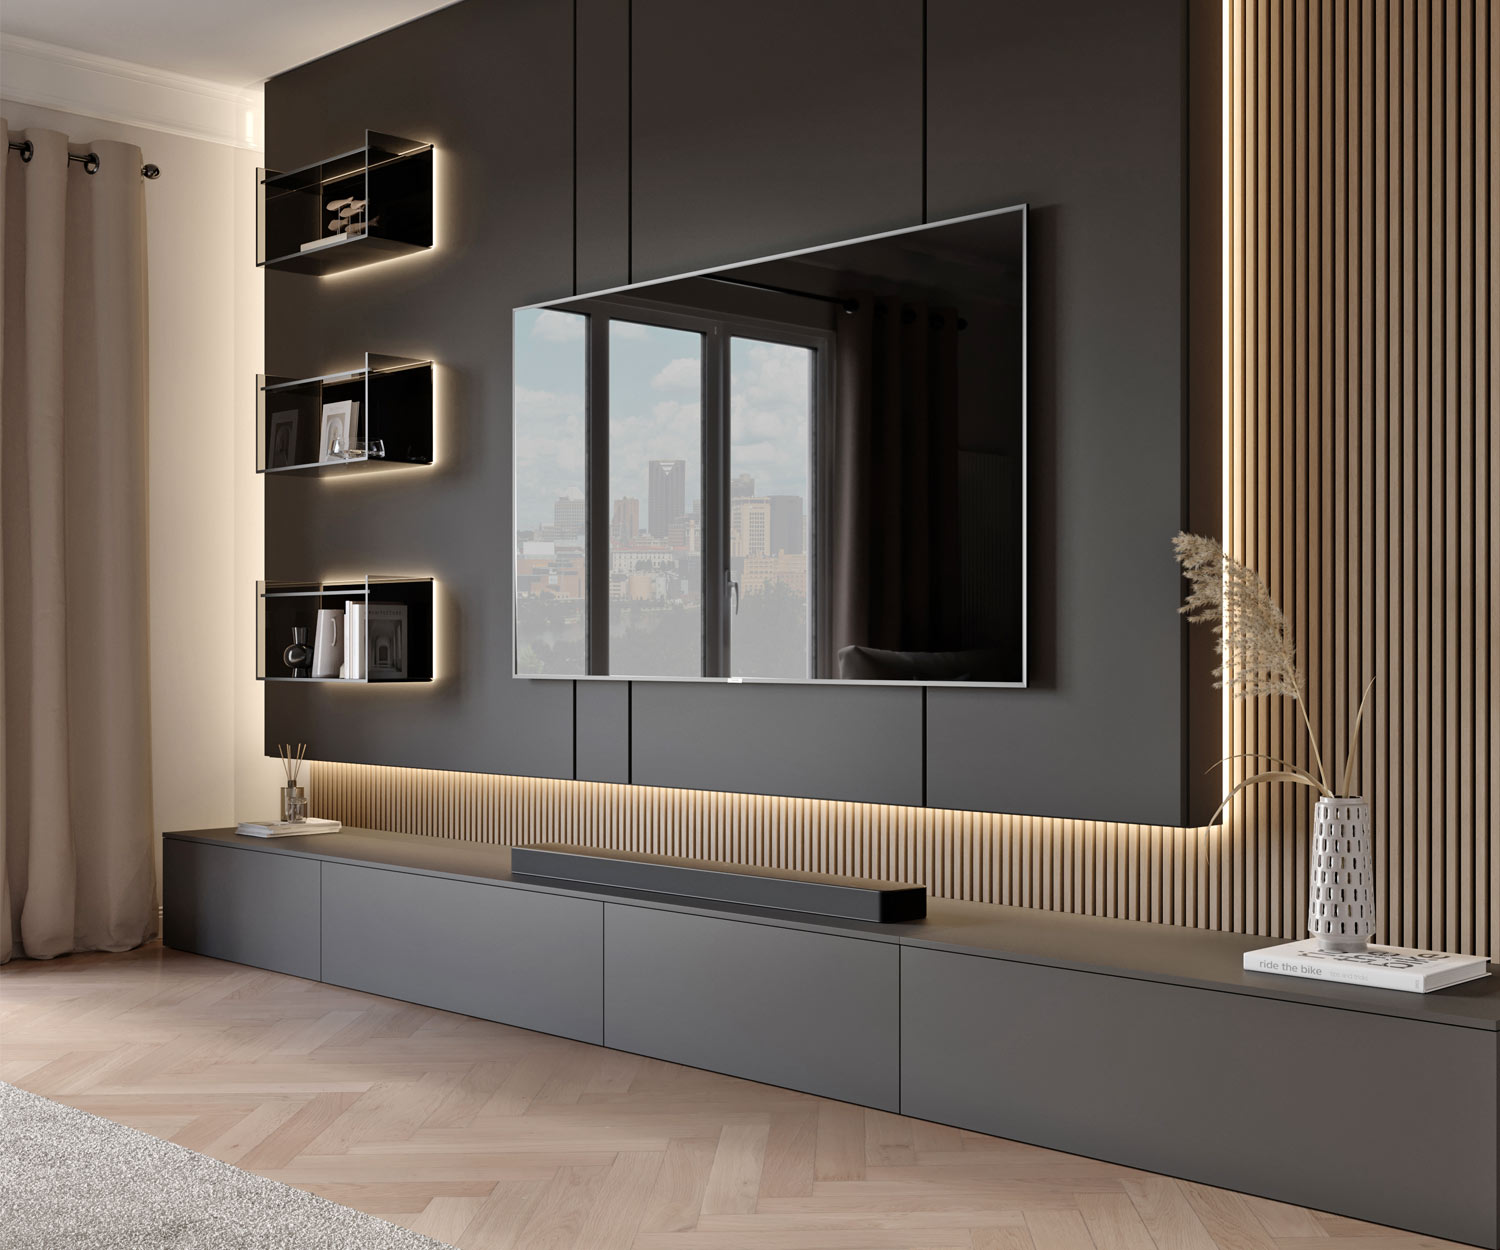 Design TV design lowboard floor-standing laccato grigio scuro opaco